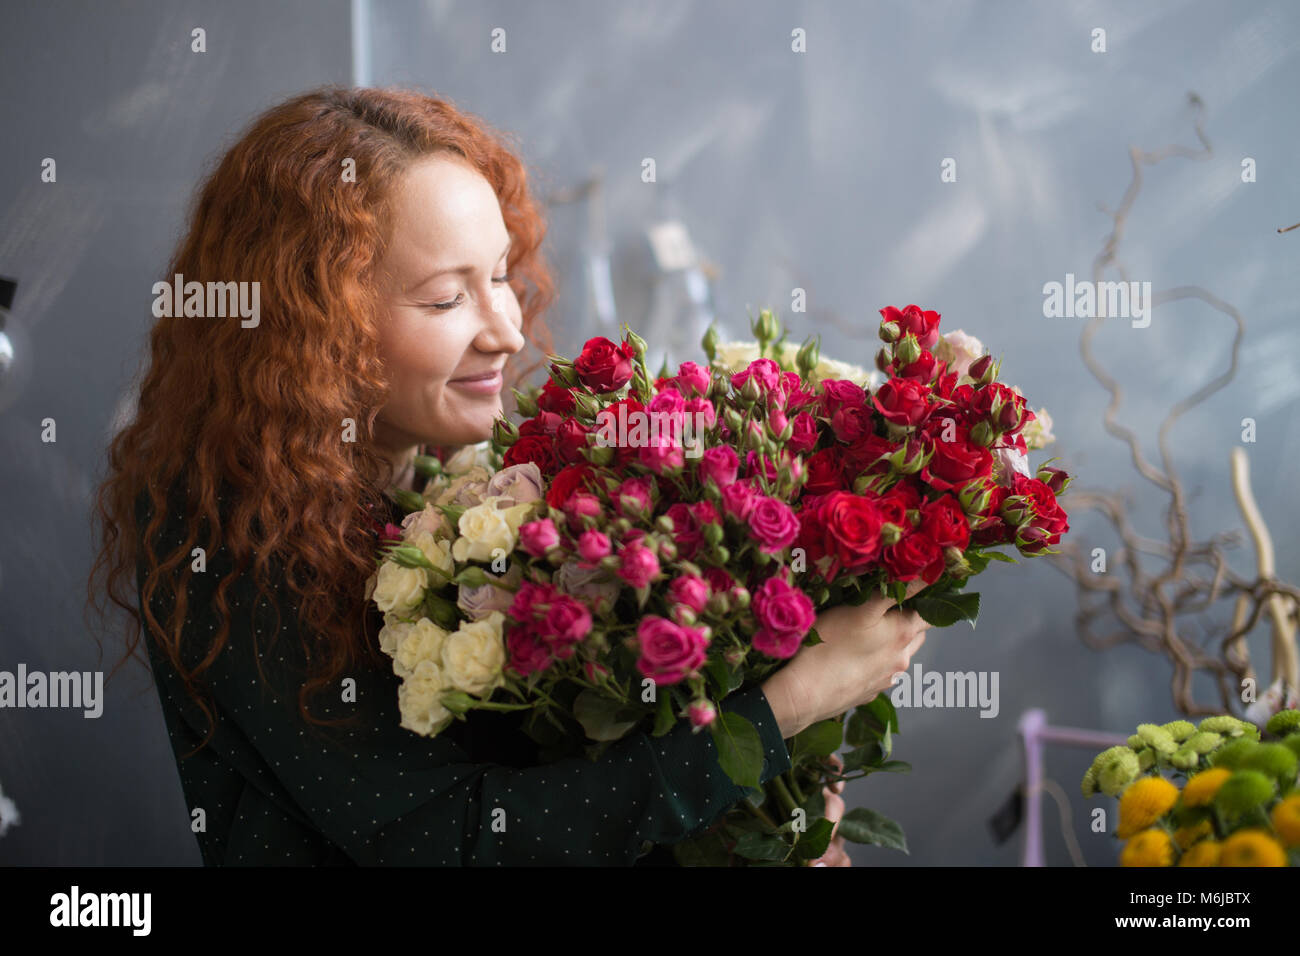 Female florist bouquet de fleurs odorantes dans la boutique de fleurs Banque D'Images